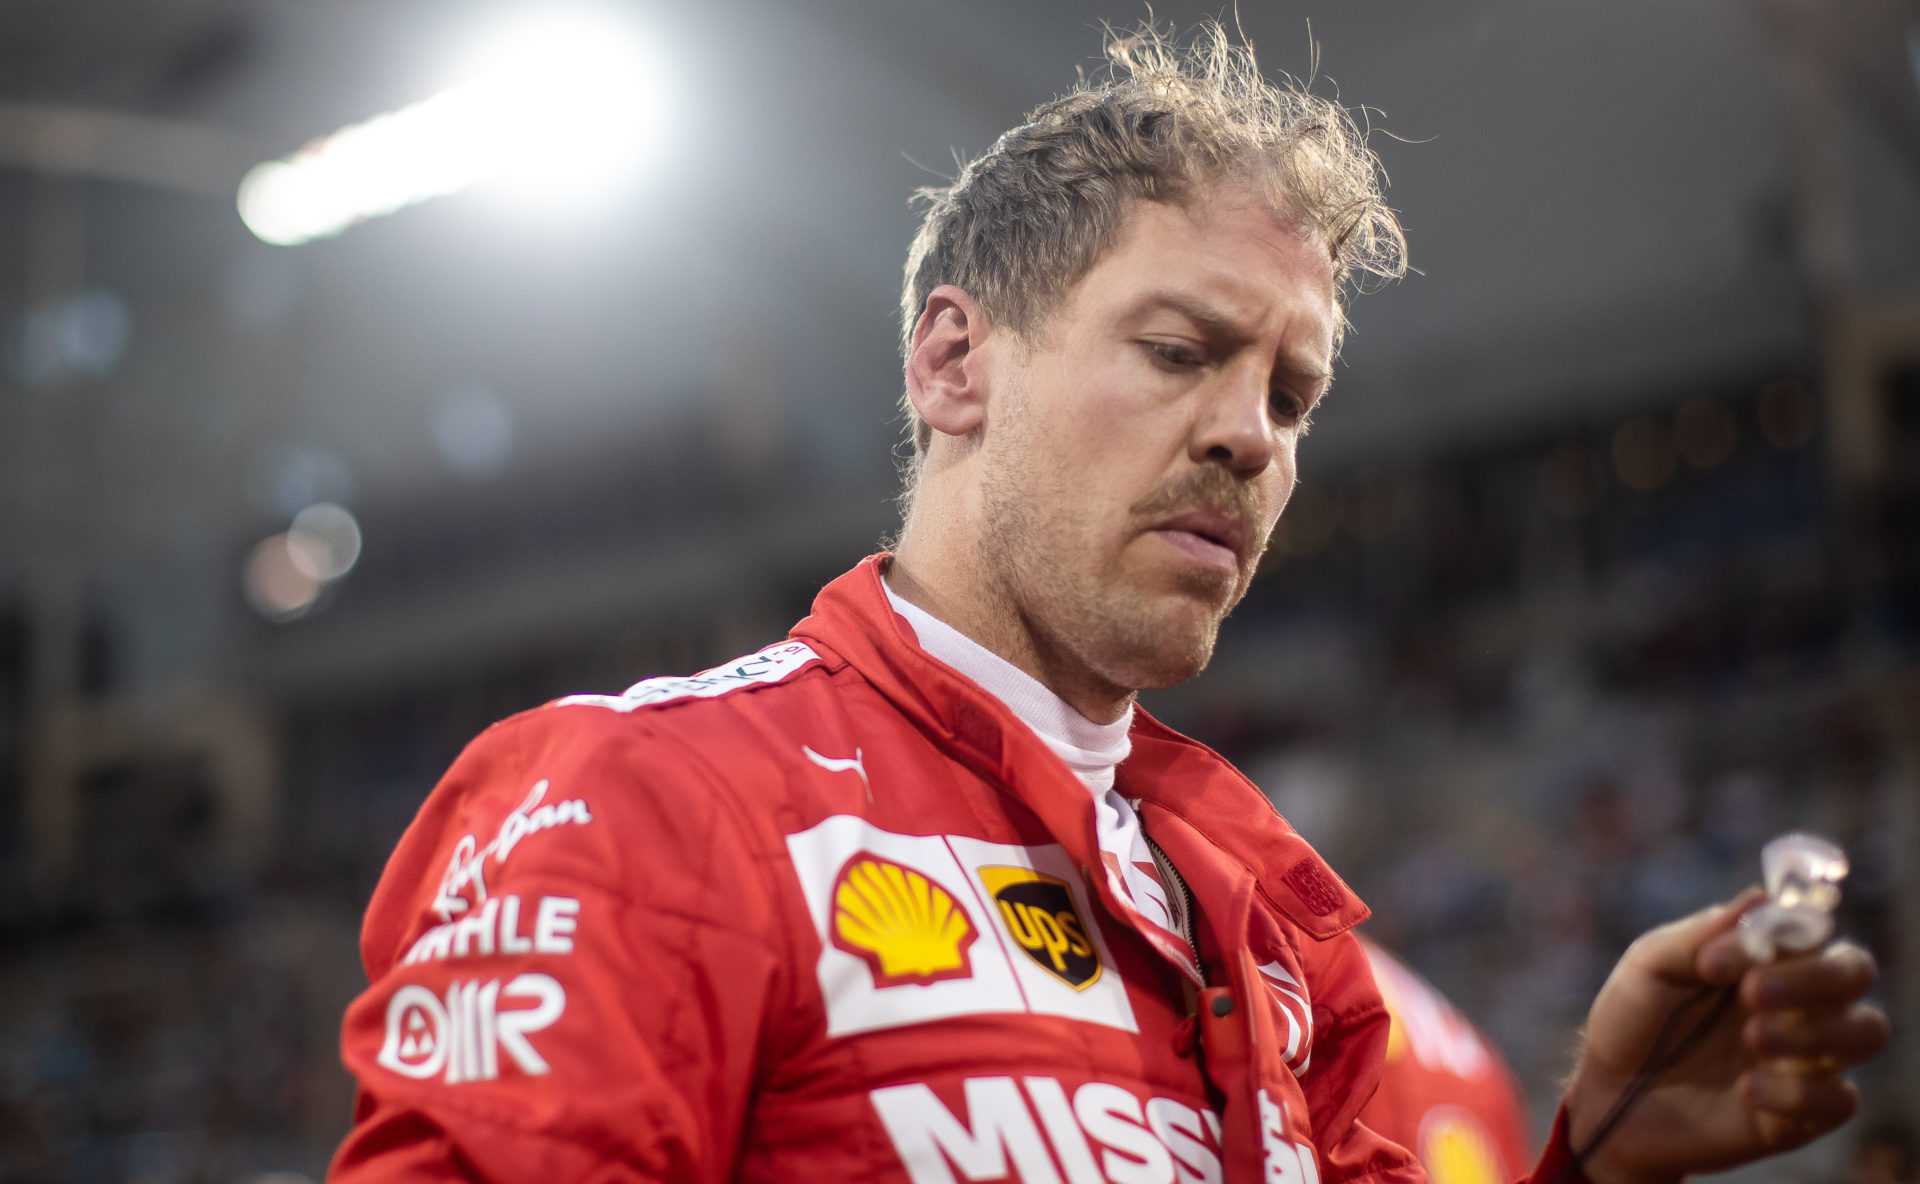 Pilote Ferrari Sebastian Vettel avant la course à Bahreïn